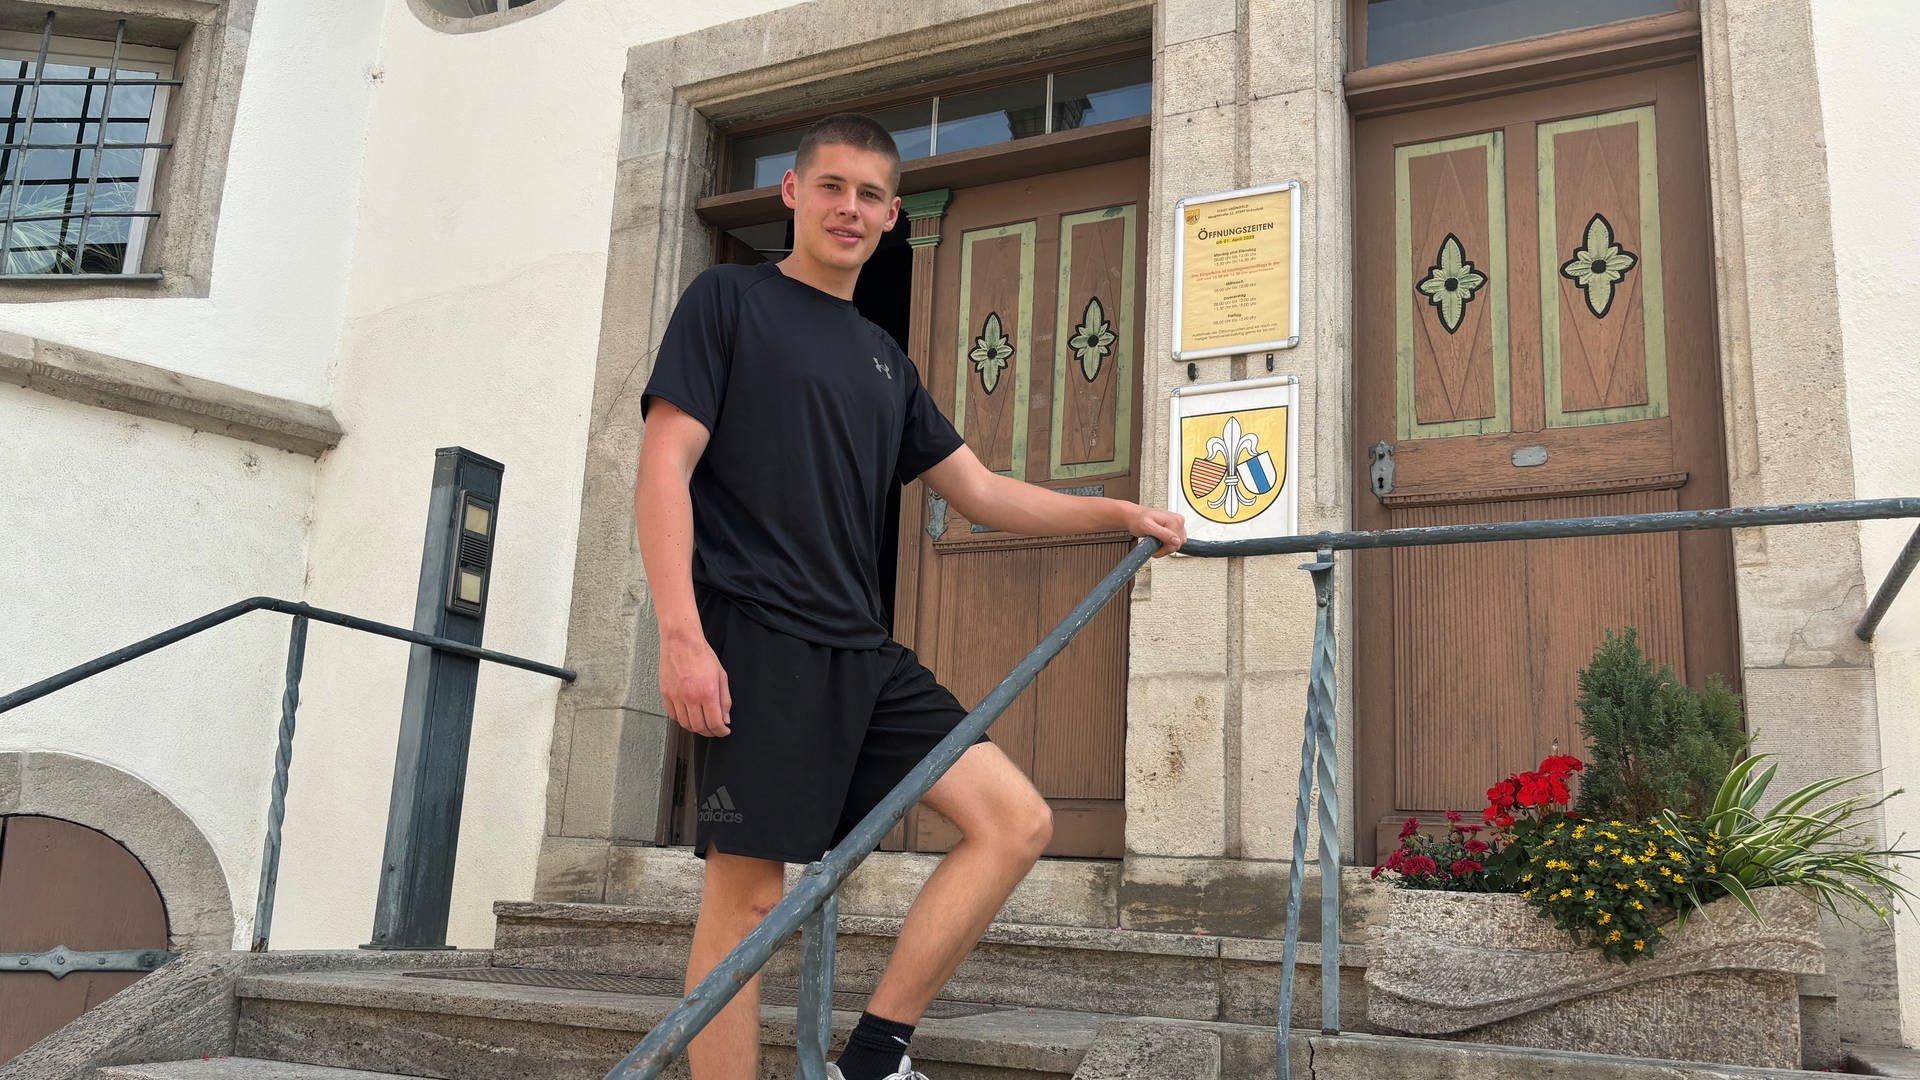 17-jähriger Stadtrat in Grünsfeld: Jugendlichen eine Stimme geben